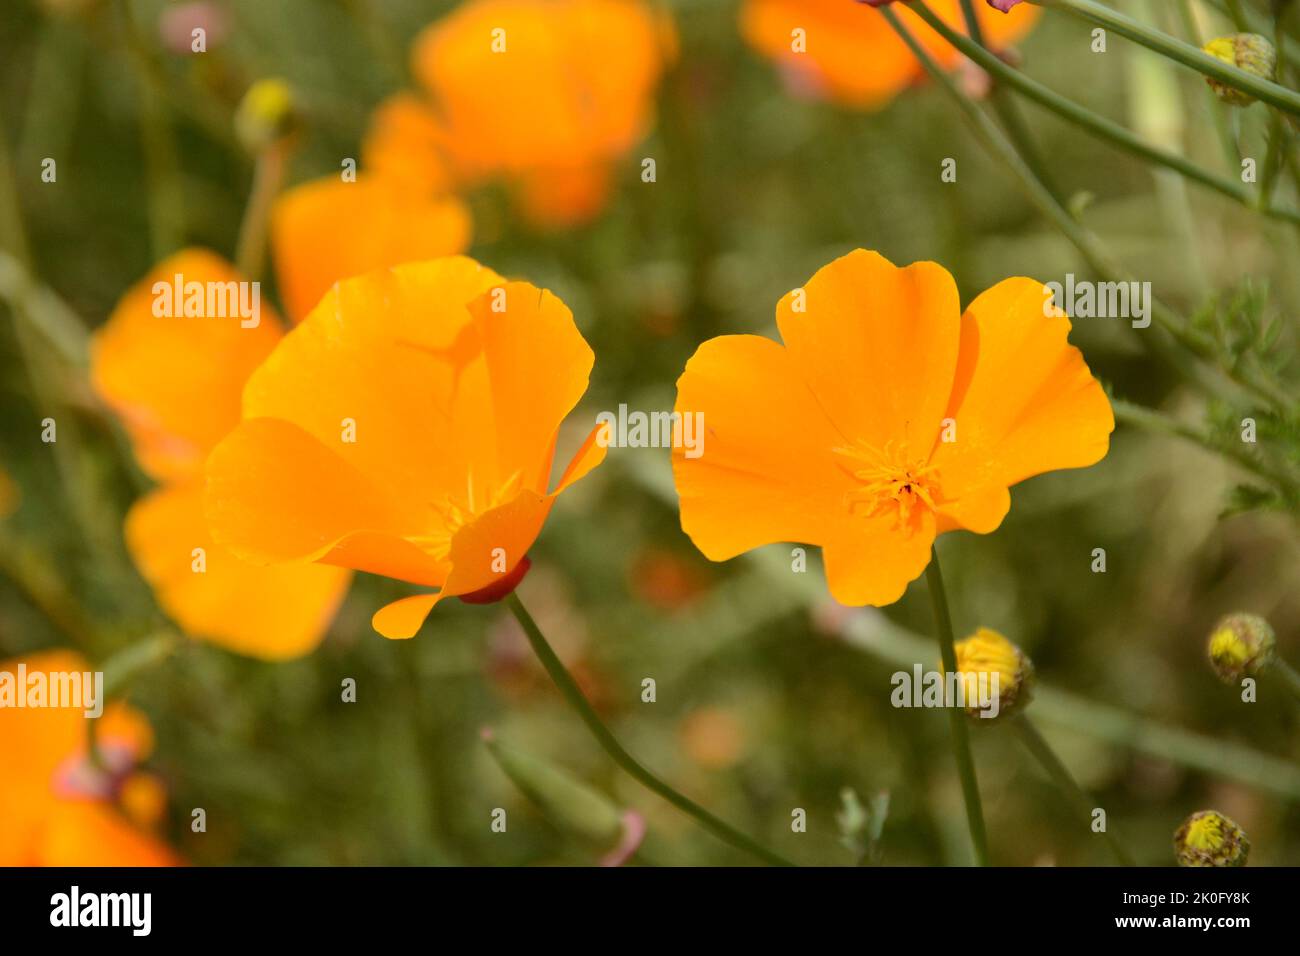 California Poppy (Eschscholzia california), blooming, open, in garden Stock Photo